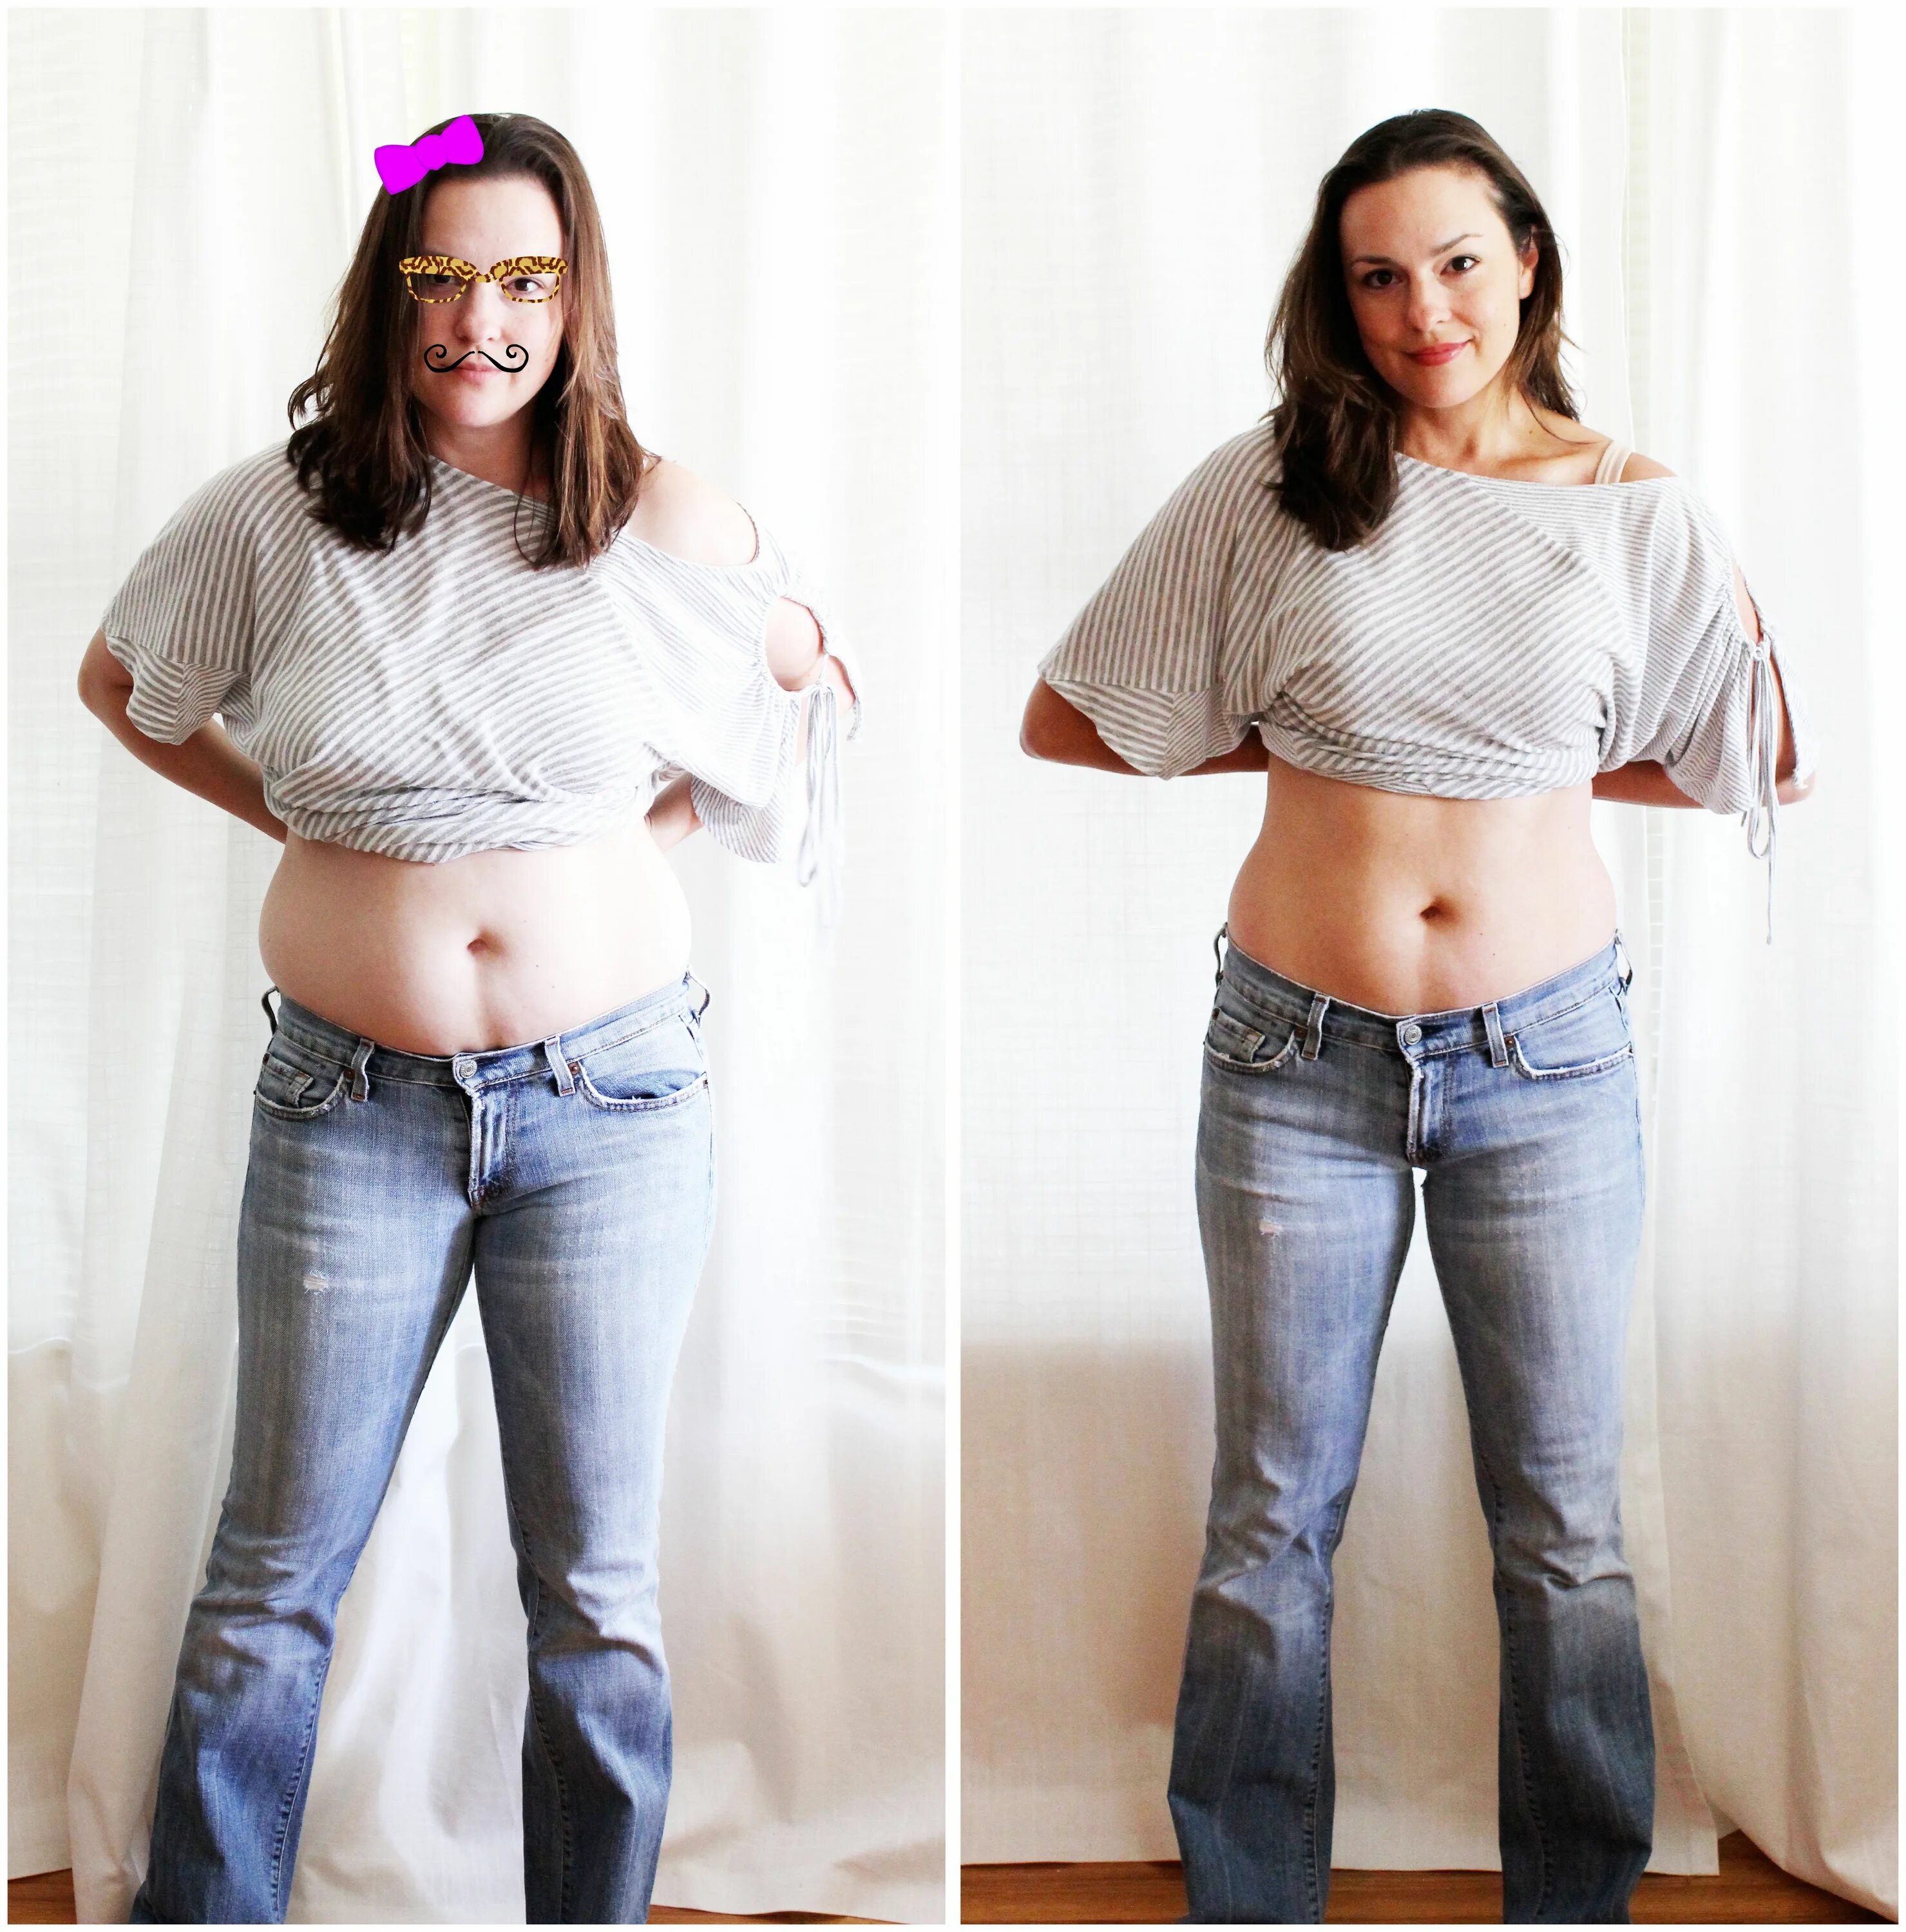 Снижение веса после. Похудение до и после. Похудение до и после фото. Живот до и после похудения. Девушка с пухлым животиком.